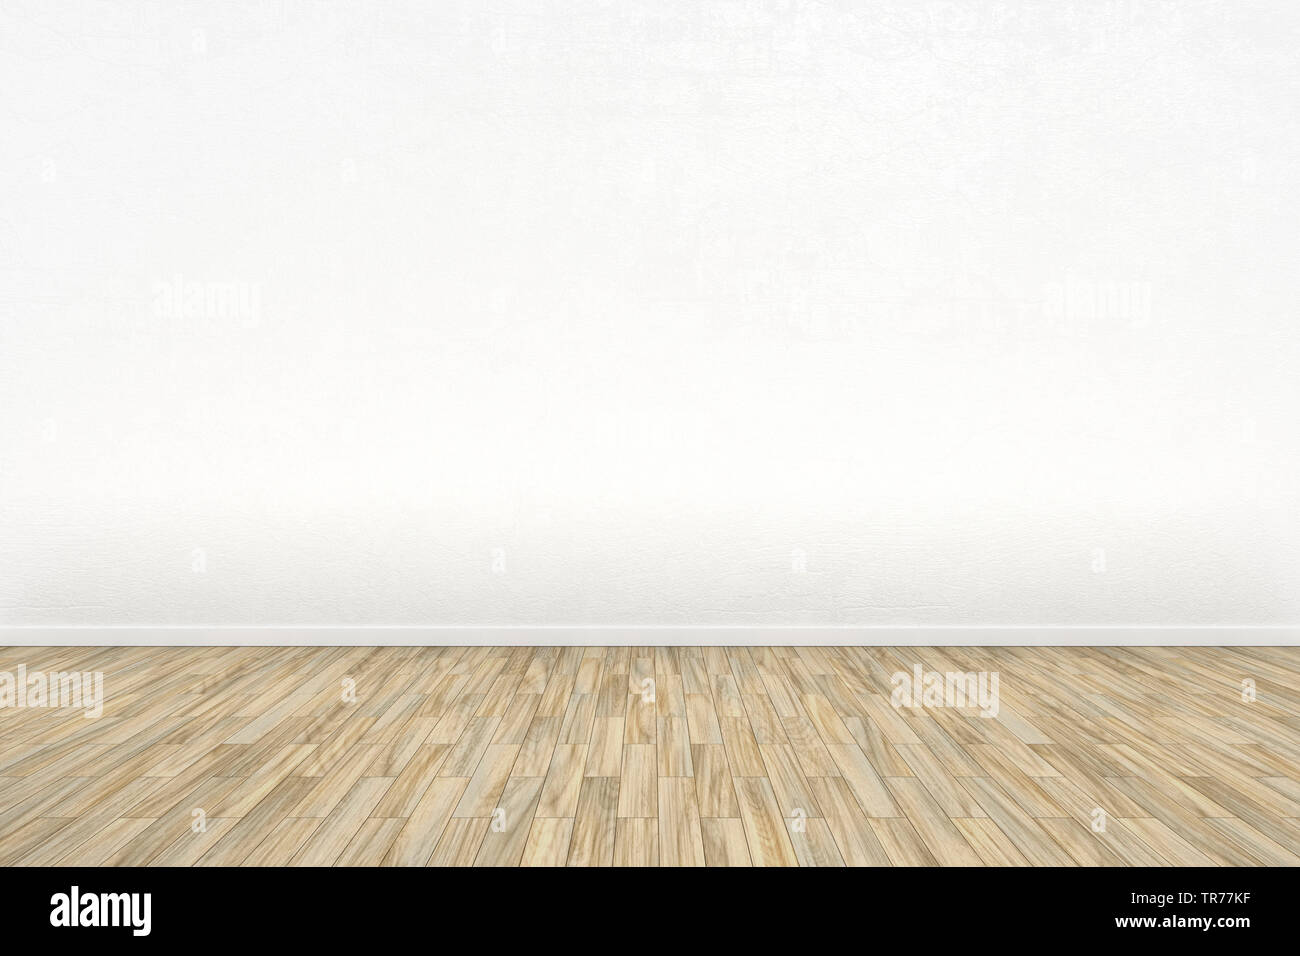 La computer grafica 3D, stanza vuota con pavimento in legno e la parete di colore grigio Foto Stock